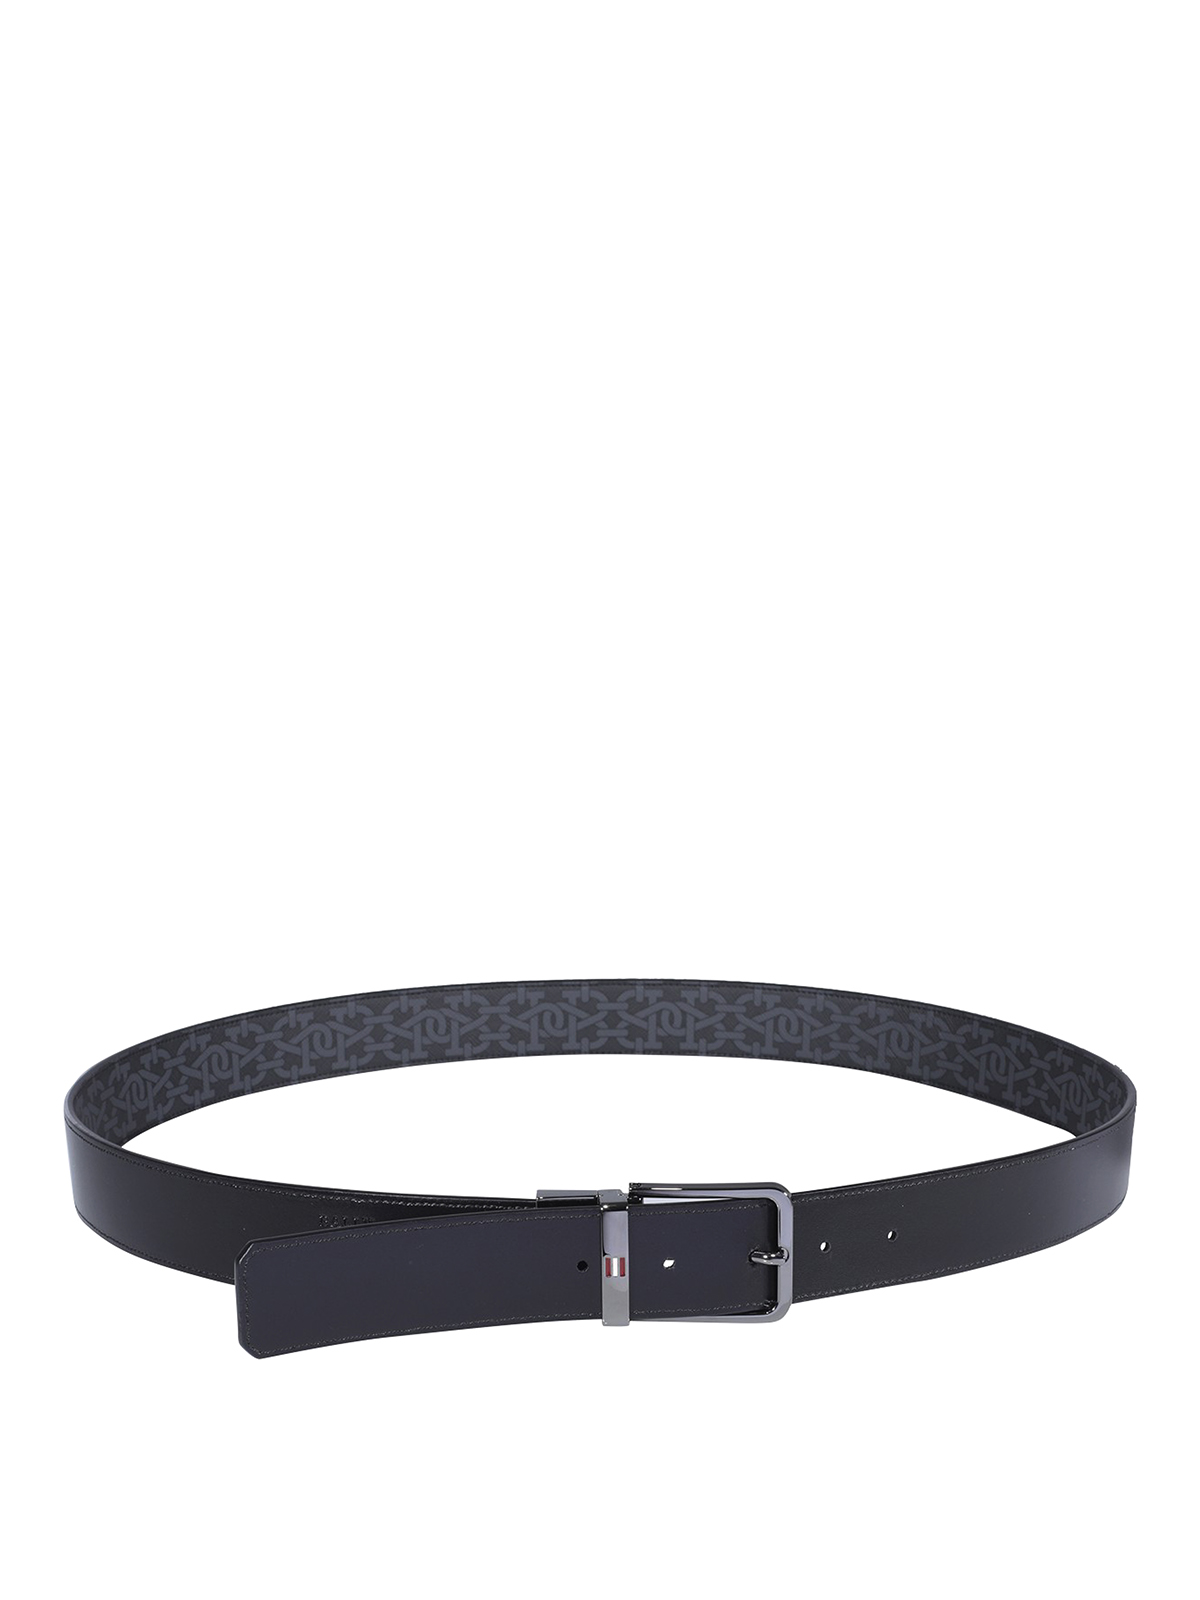 Belts Bally - Arkin belt - ARKIN35OSI716R | Shop online at iKRIX